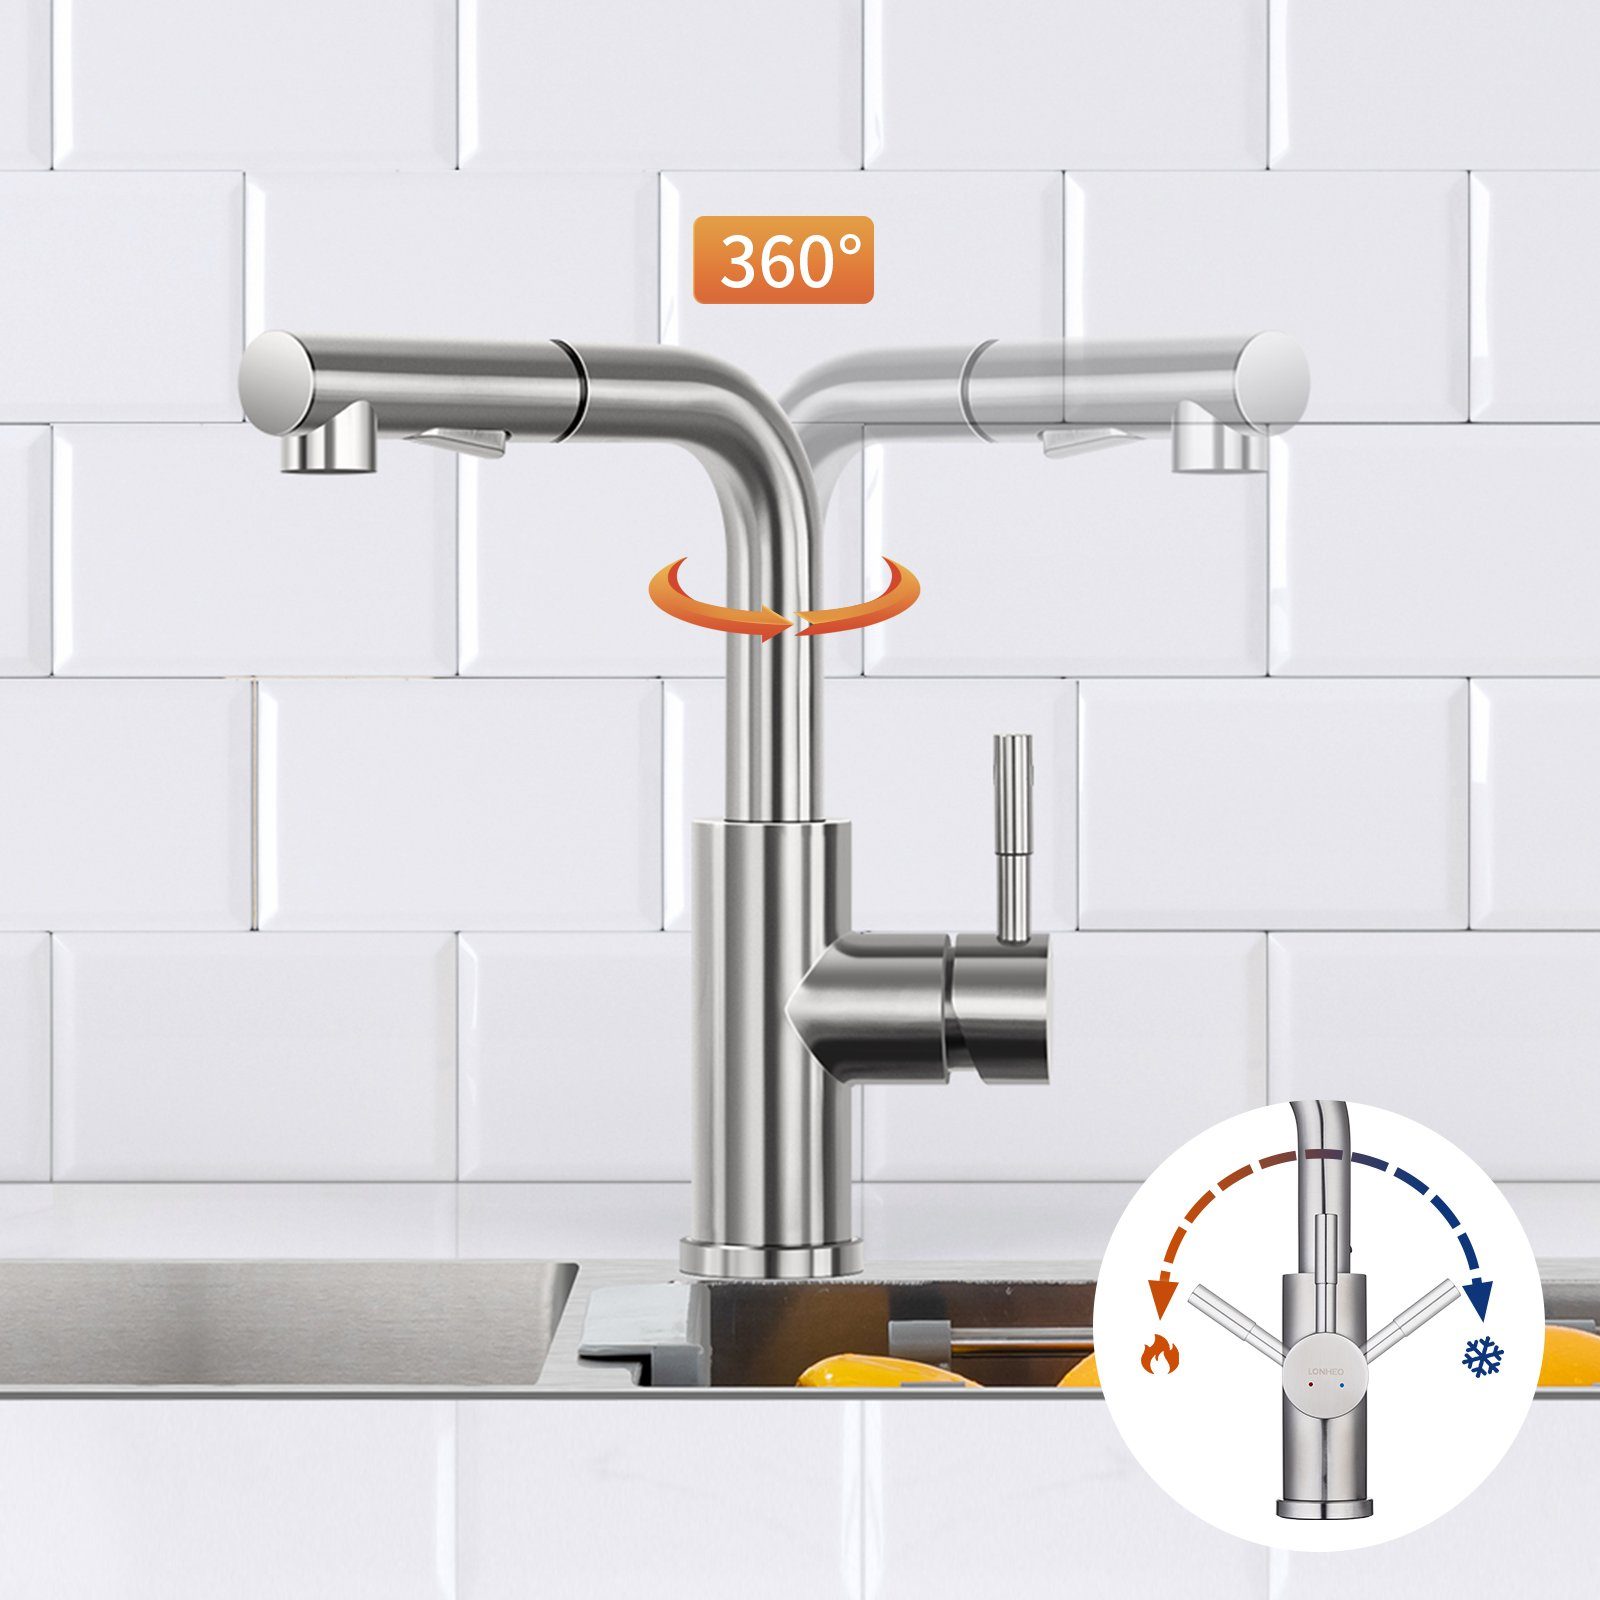 Lonheo Küchenarmatur Strahlarten Brause mit 360° Küchenarmatur 2 Wasserhahn Ausziehbar Drehbar Edelstahl